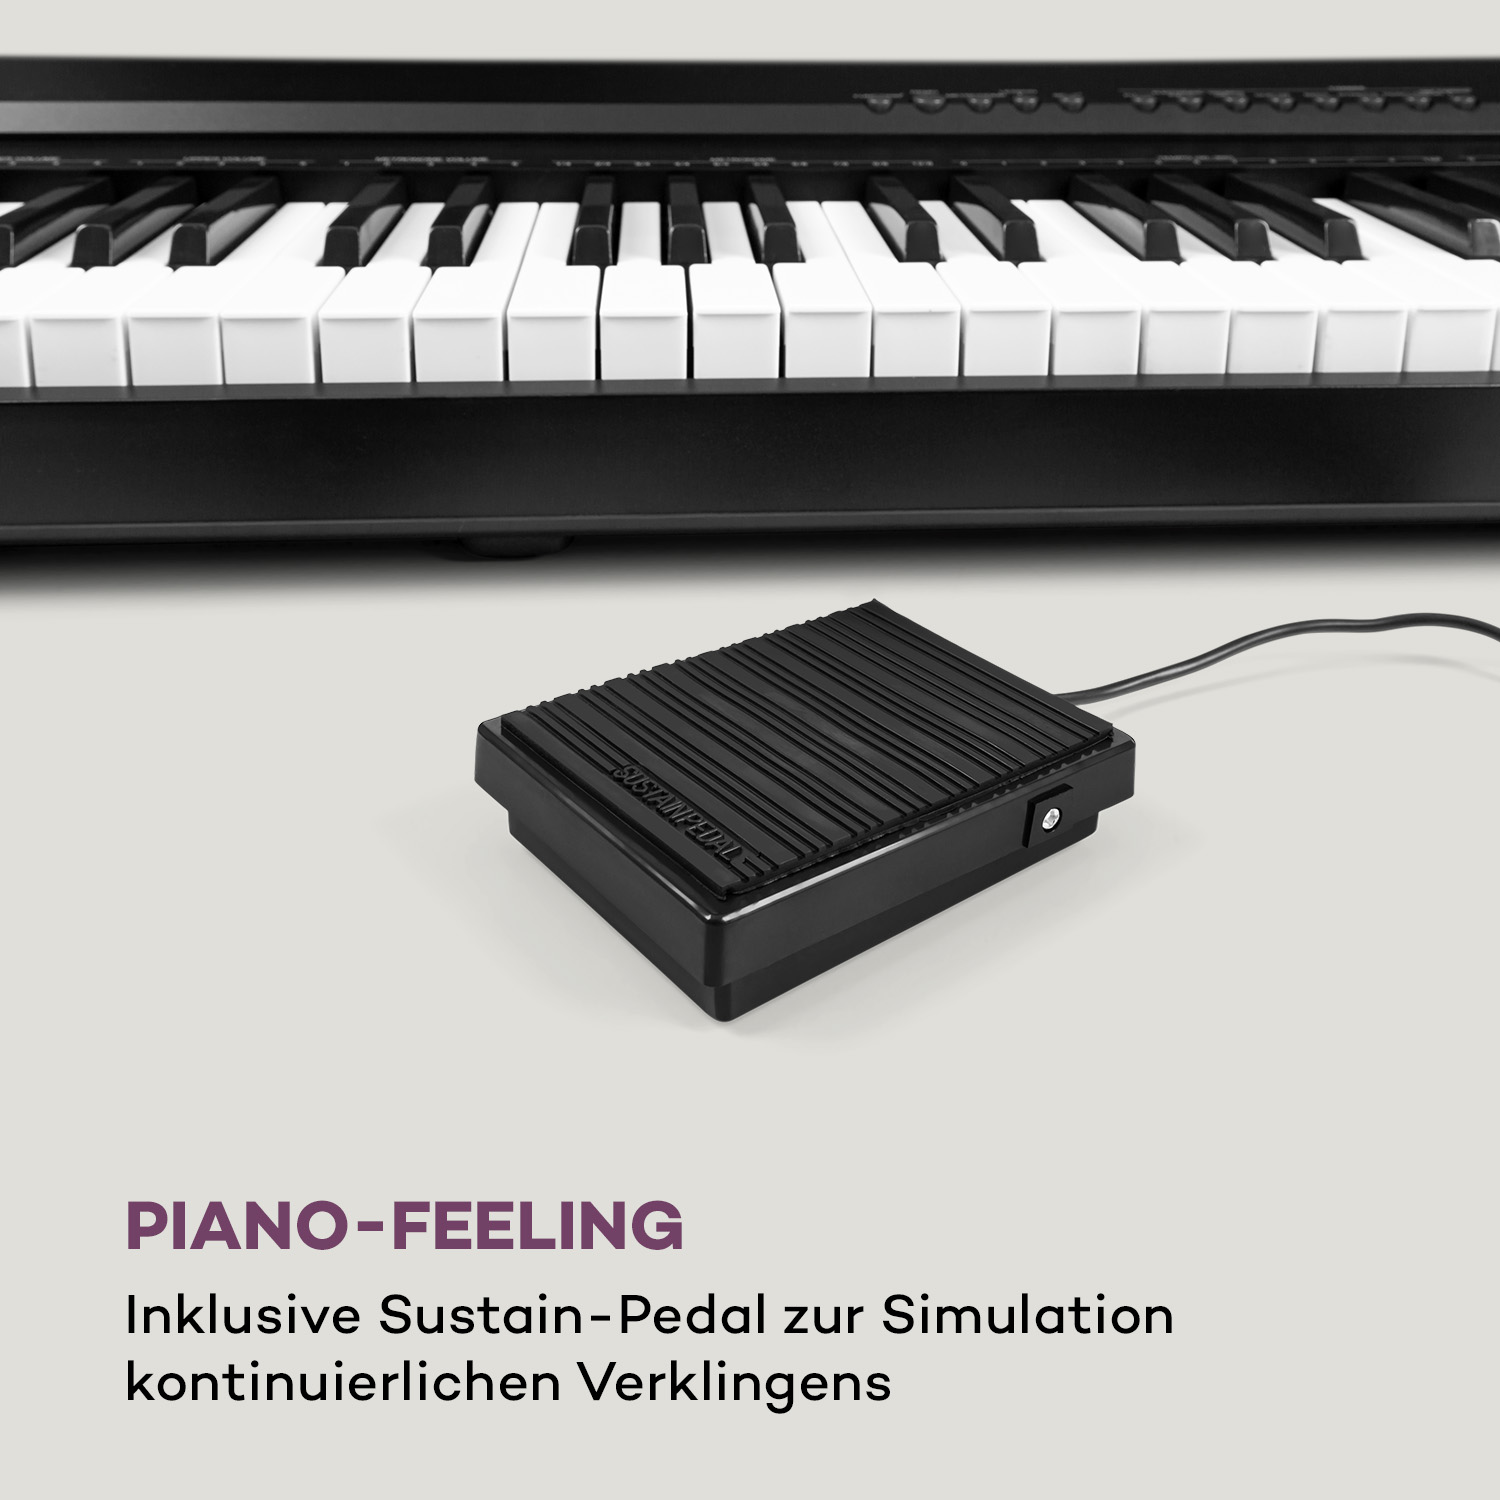 SCHUBERT Preludio Keyboard, Schwarz